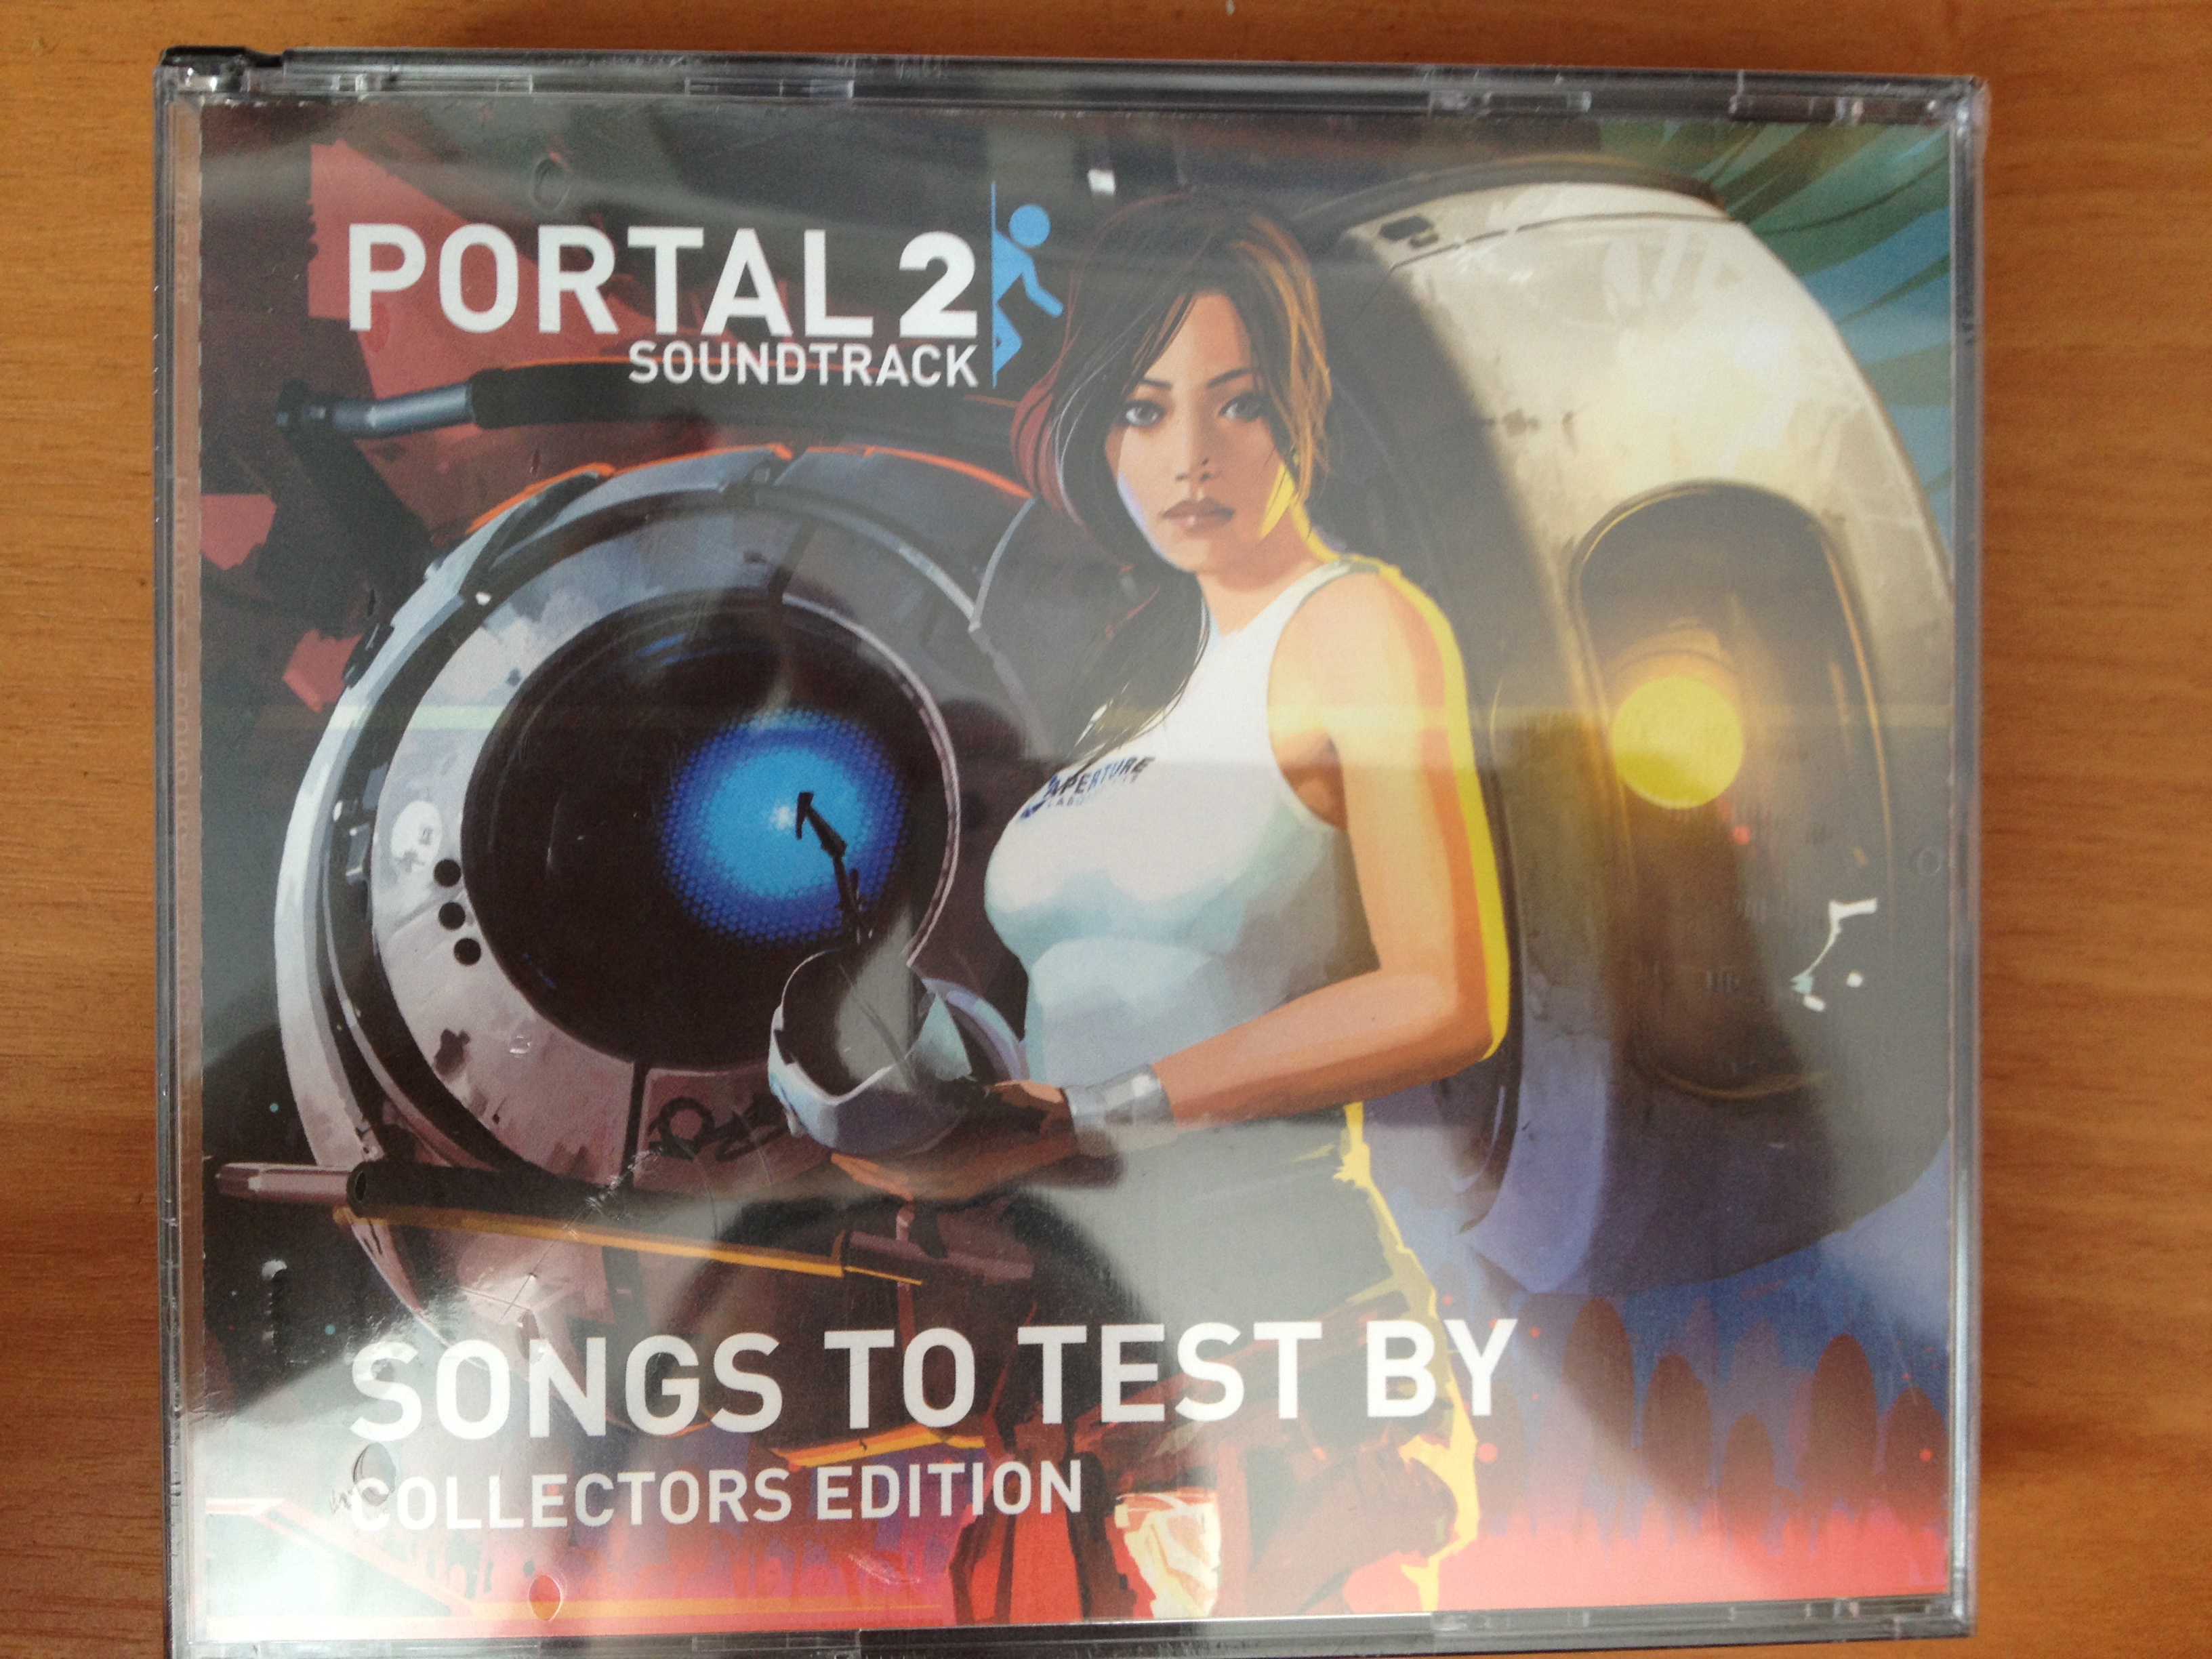 Portal 2 repercussions ost фото 109